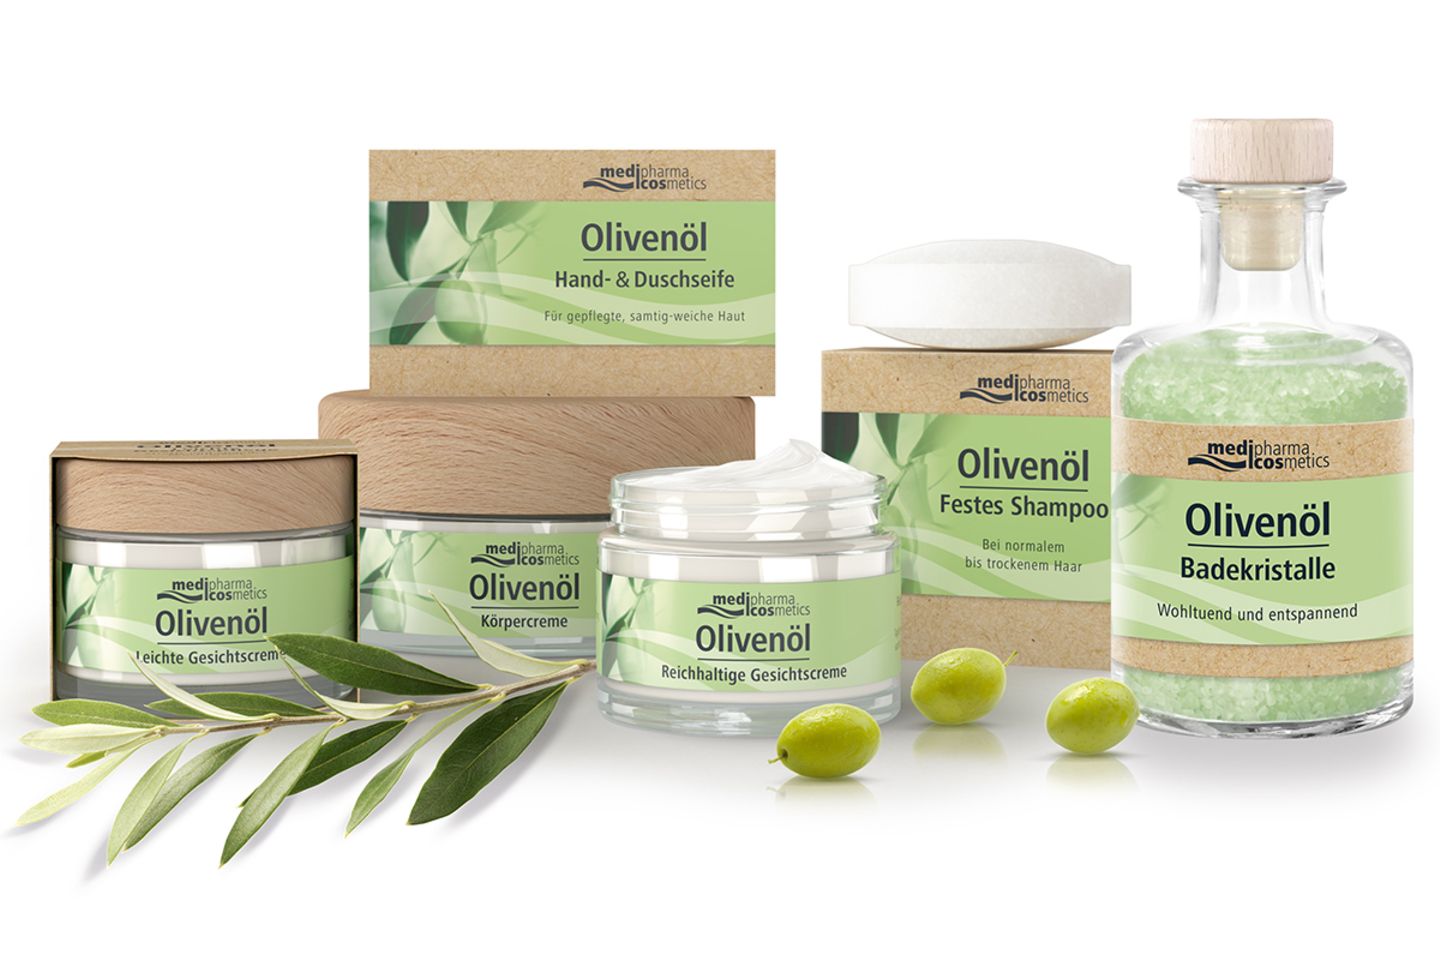 IN KOOPERATION MIT DR. THEISS NATURWAREN: Ein medipharma cosmetics  Olivenöl-Pflege-Set zu gewinnen - [SCHÖNER WOHNEN]